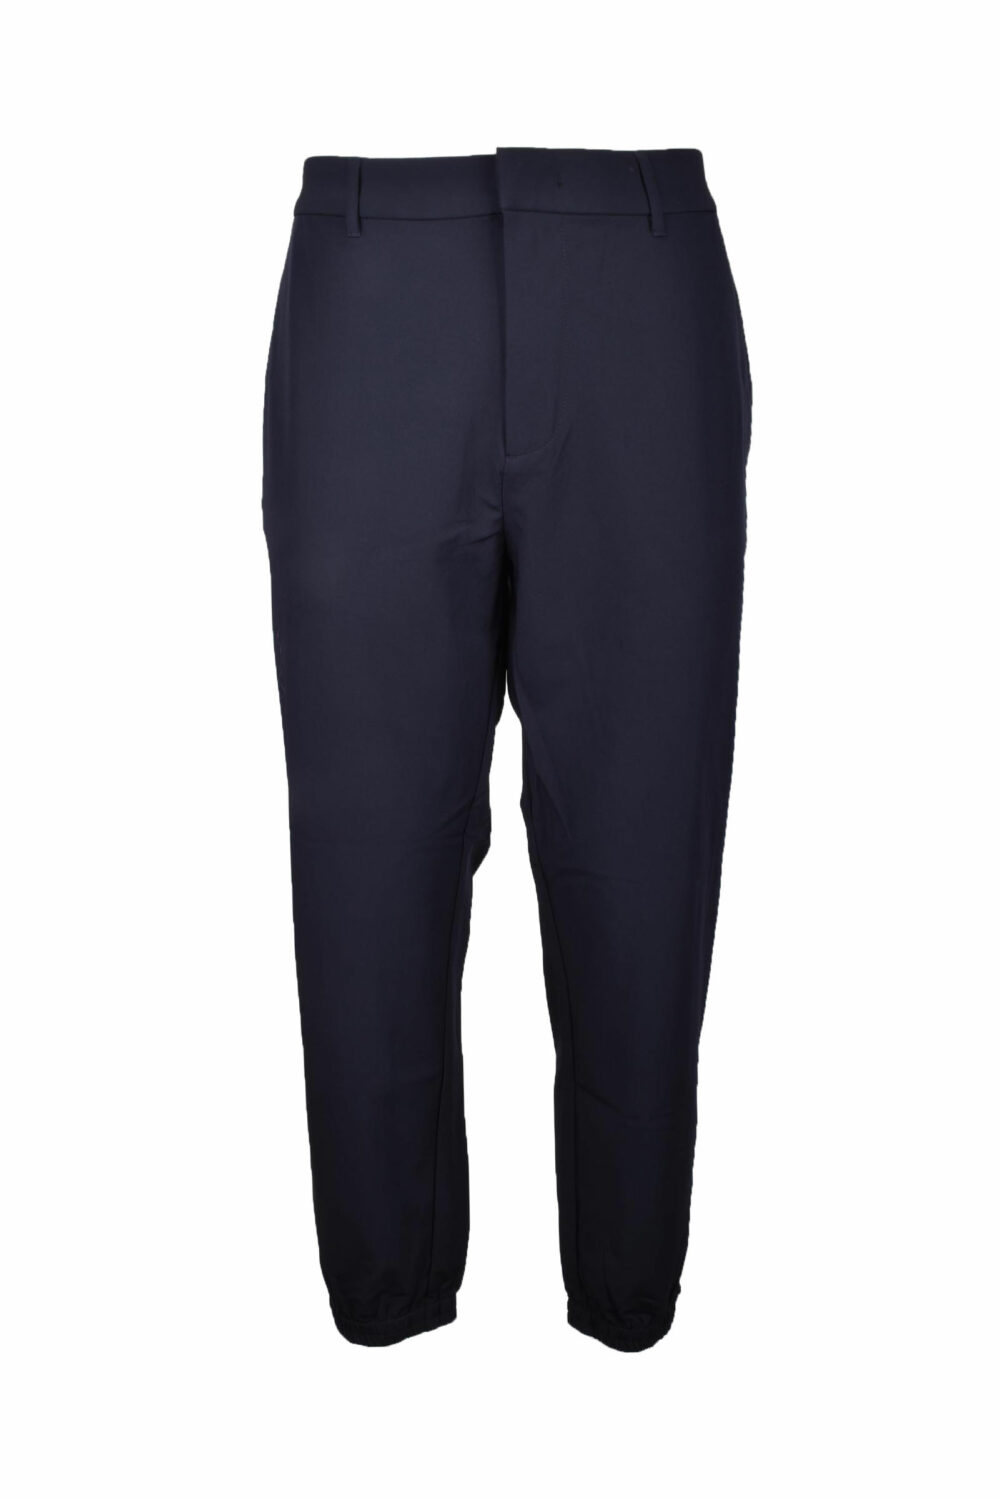 Pantaloni Emporio Armani Blu - Foto 1